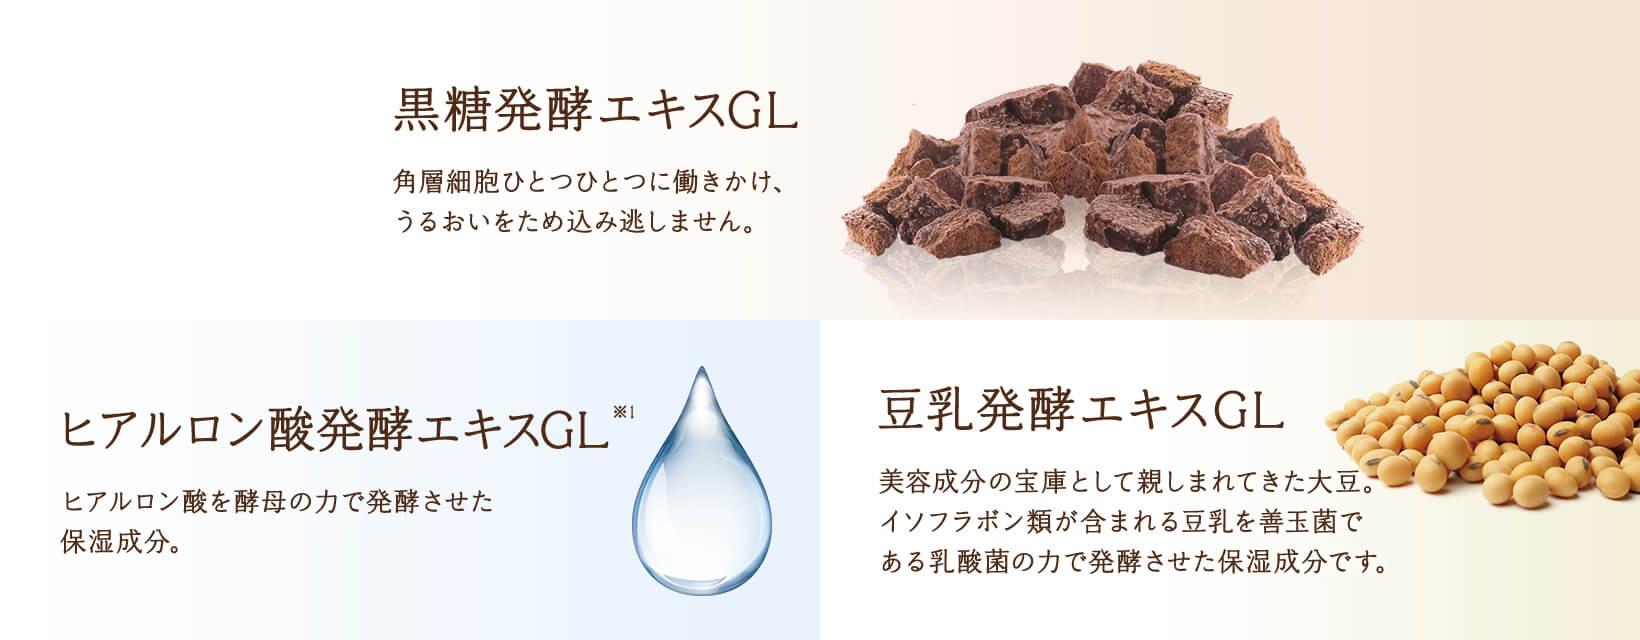 黒糖発酵エキスGL / ヒアルロン酸発酵エキスGL※1 / 豆乳発酵エキスGL